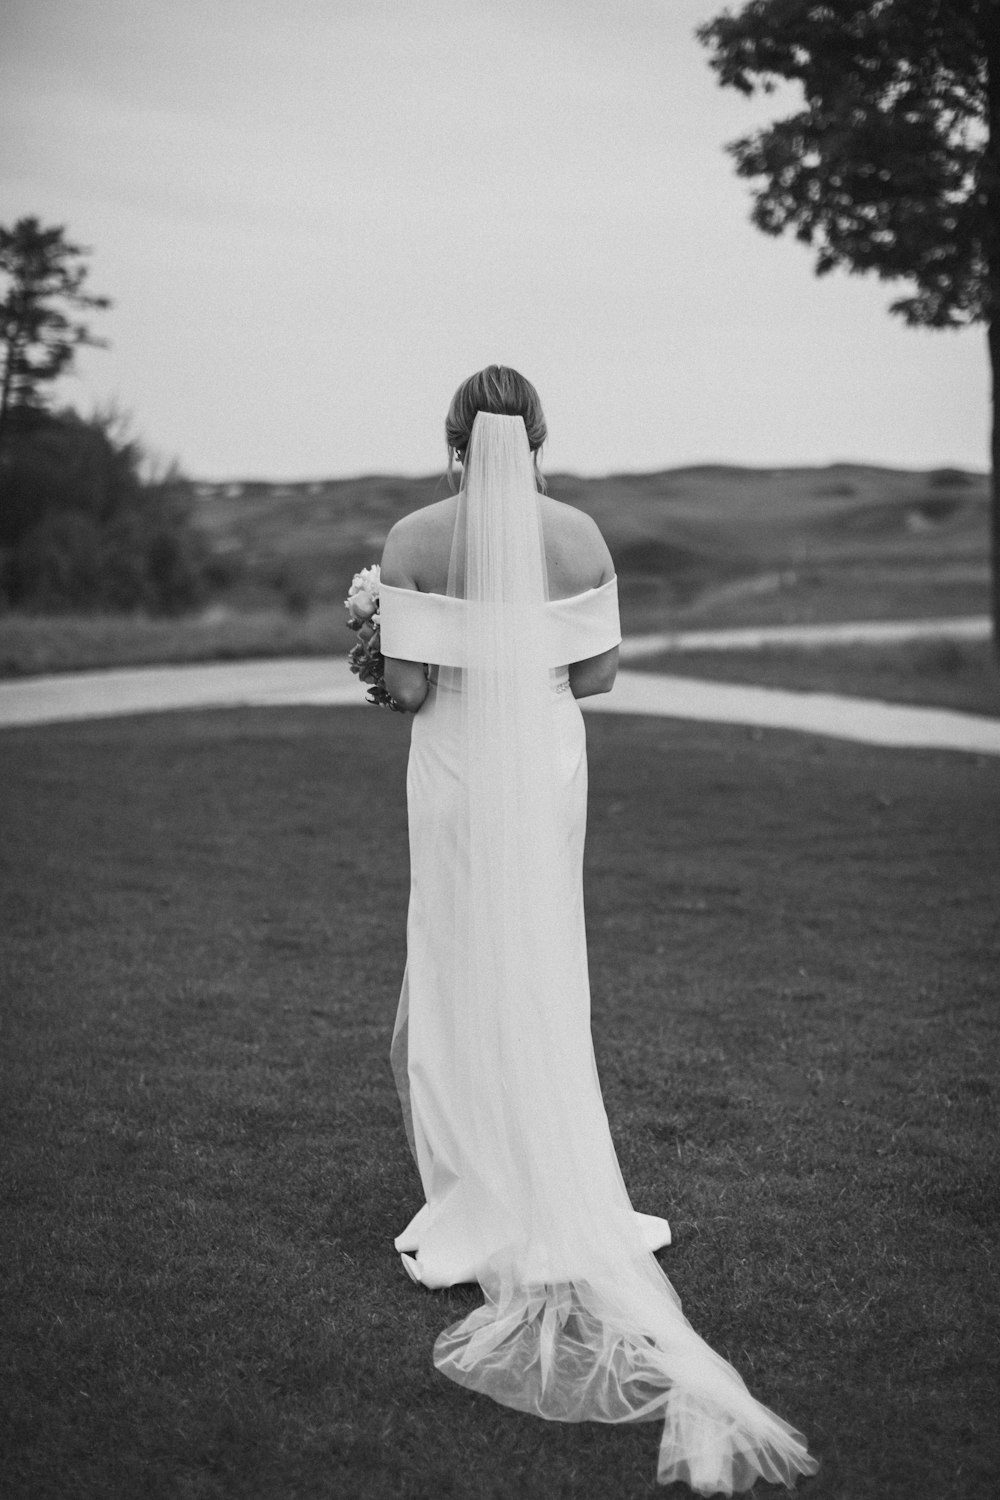 a woman in a wedding dress walking across a field